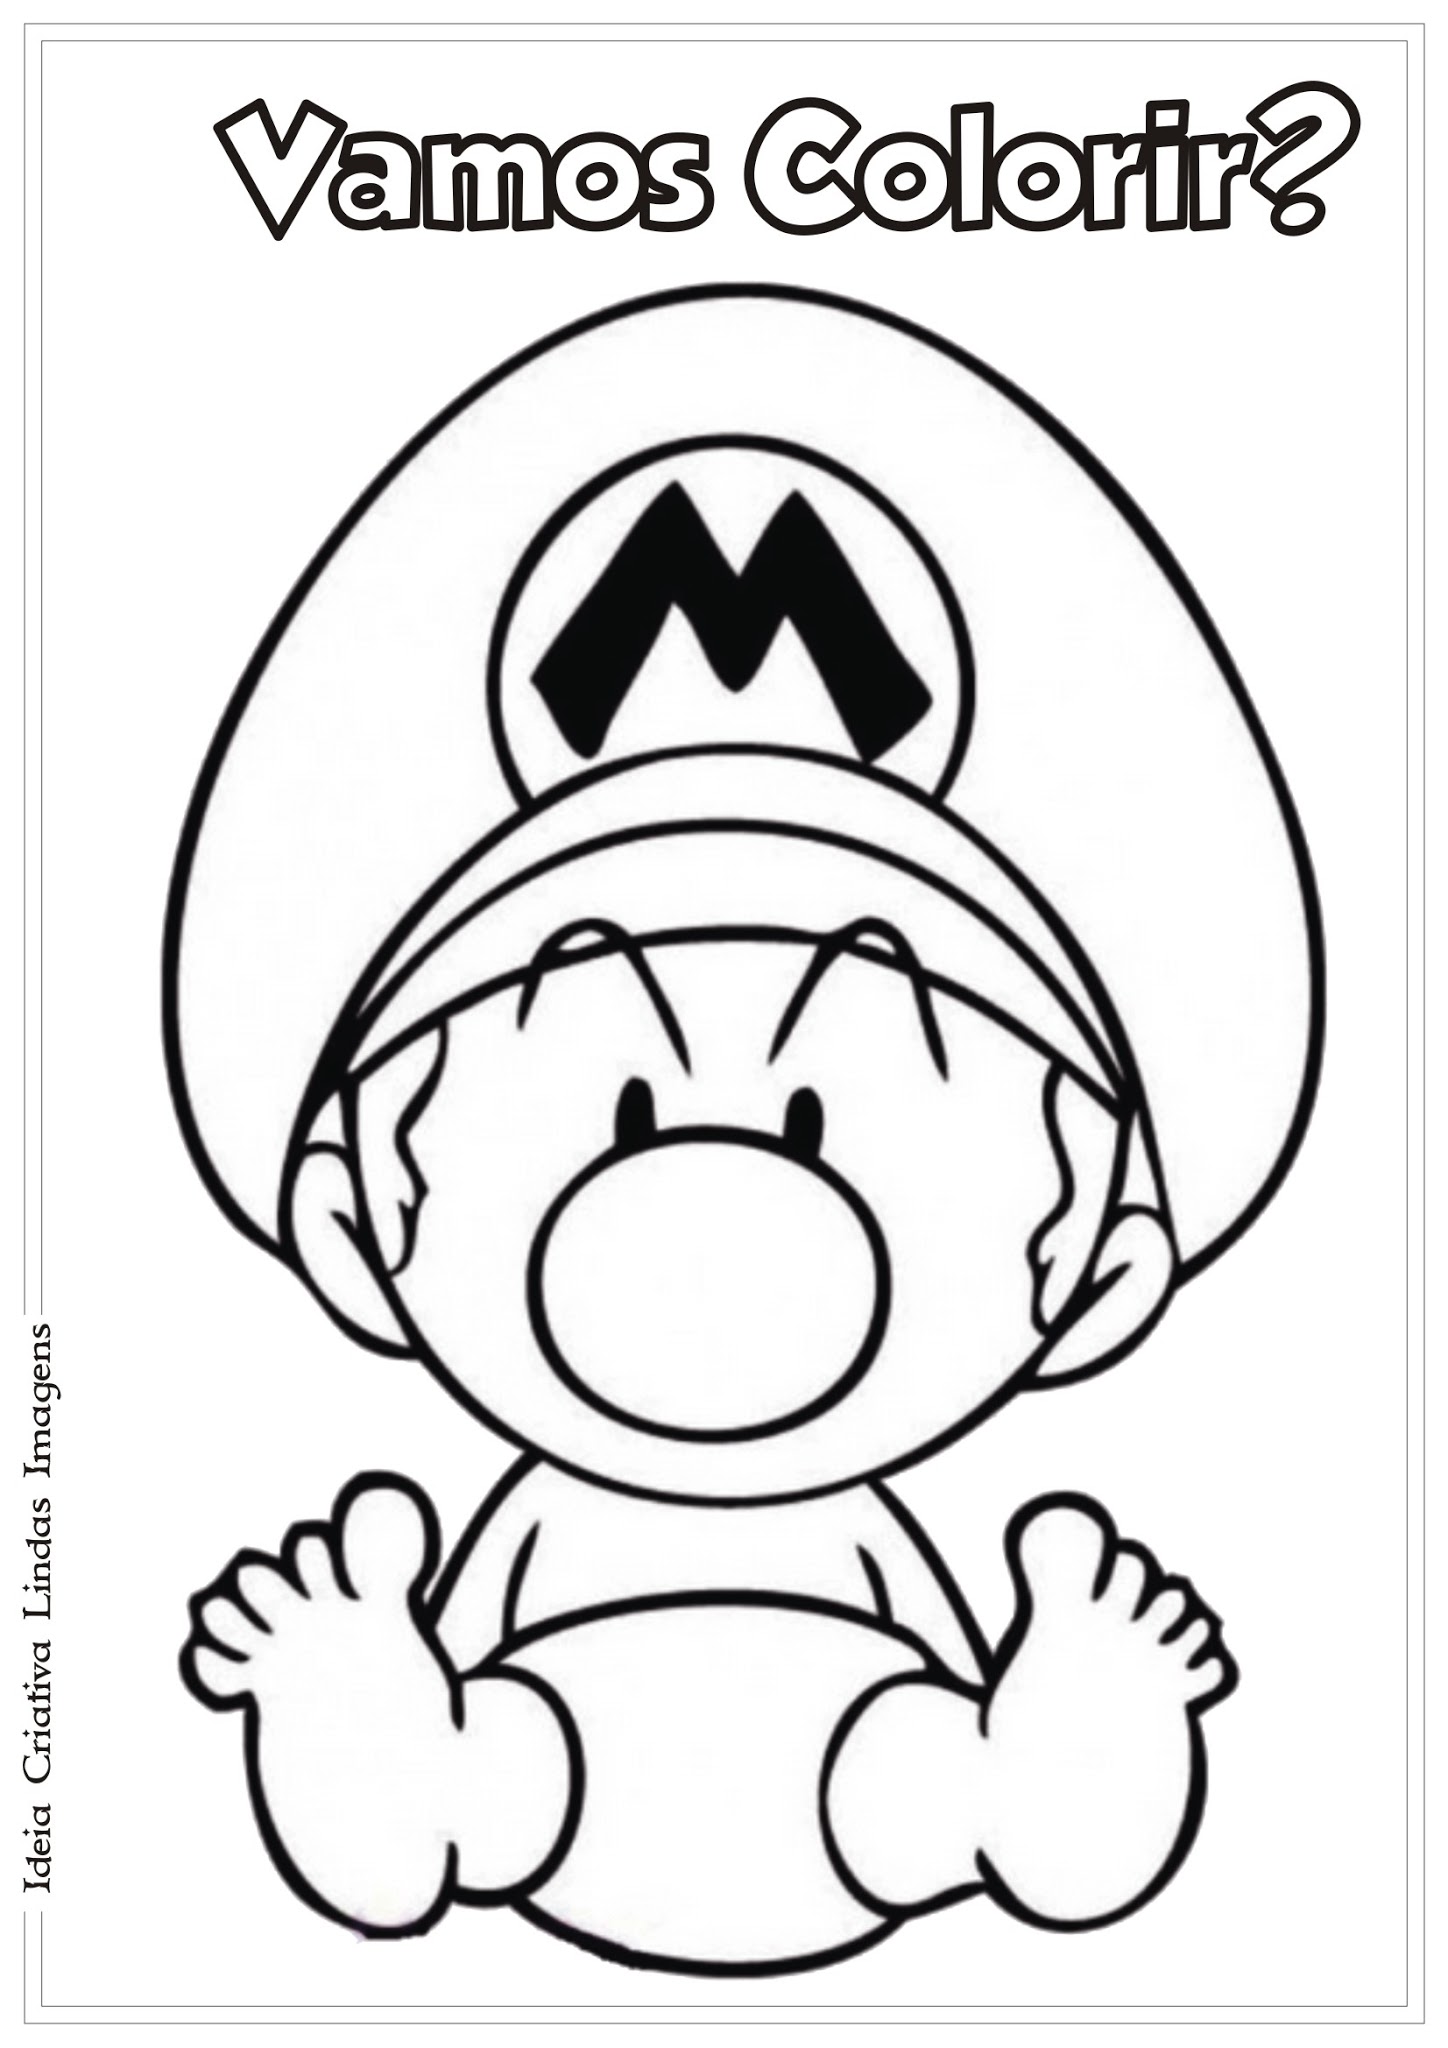 Super Mario Bros, desenhos para imprimir colorir e pintar do Mario, Luigi,  Princesa Peach, Bowser etc - Desenhos para pintar e colorir